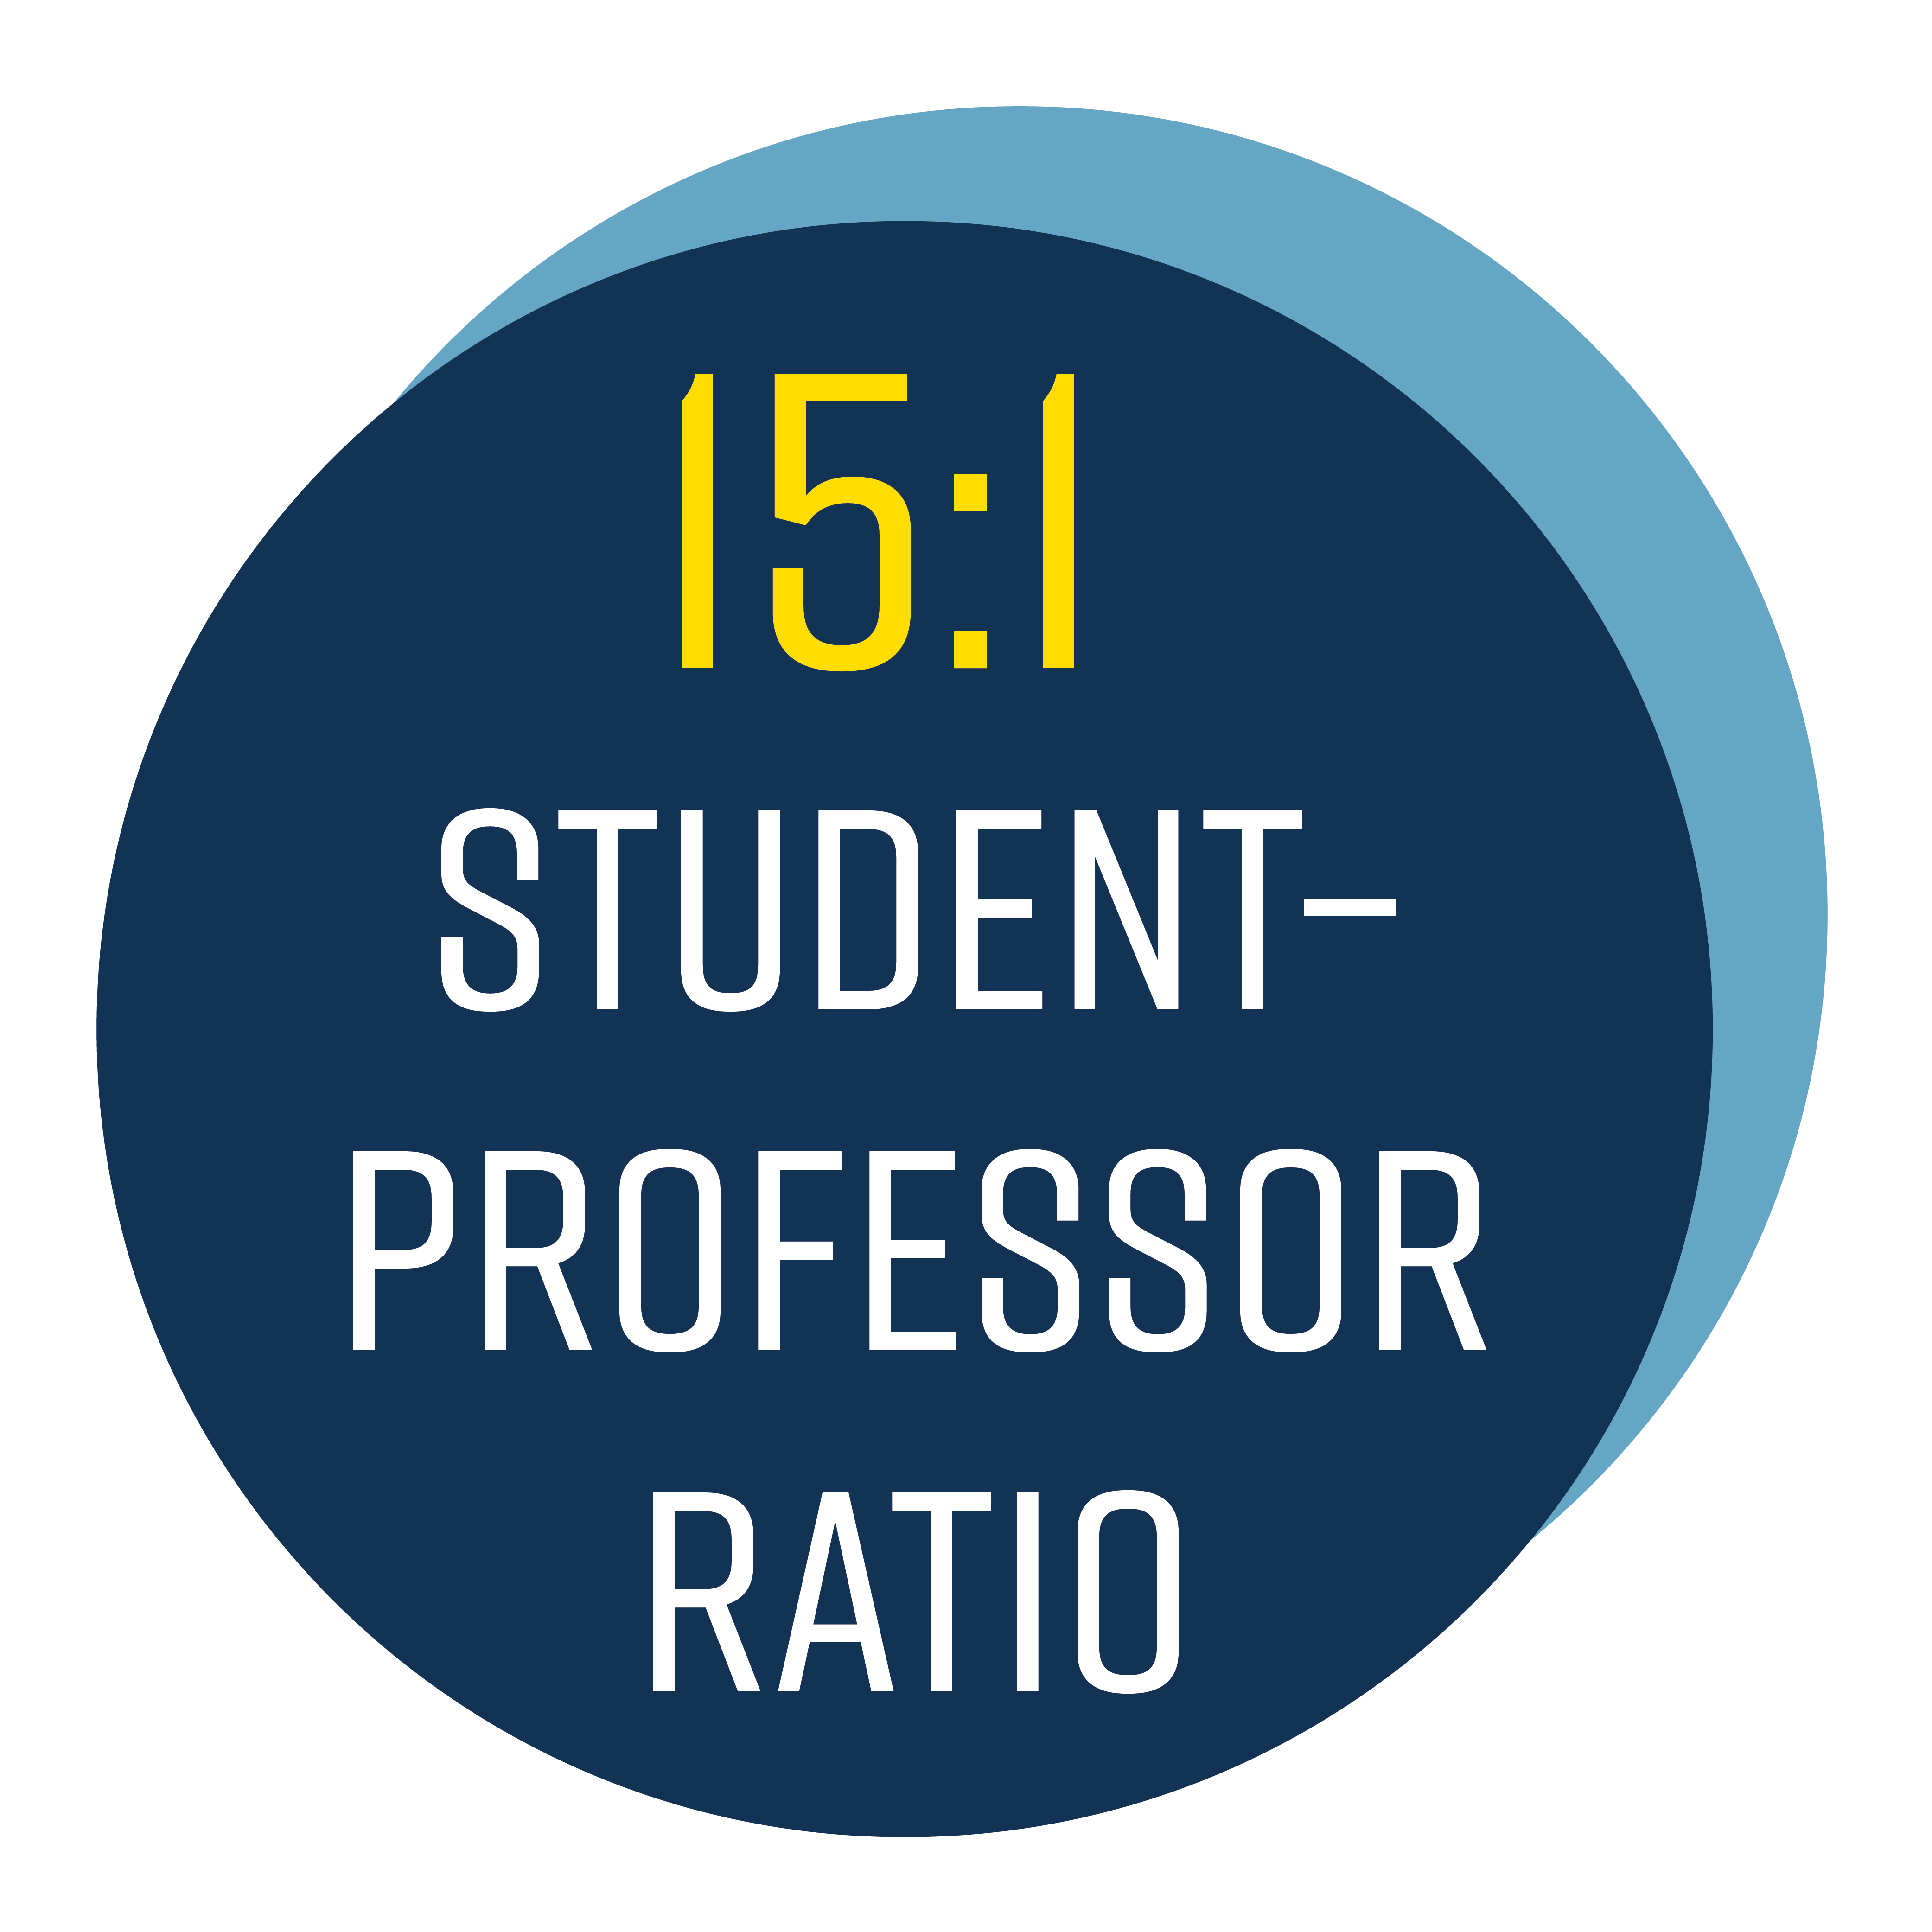 Student Ratio